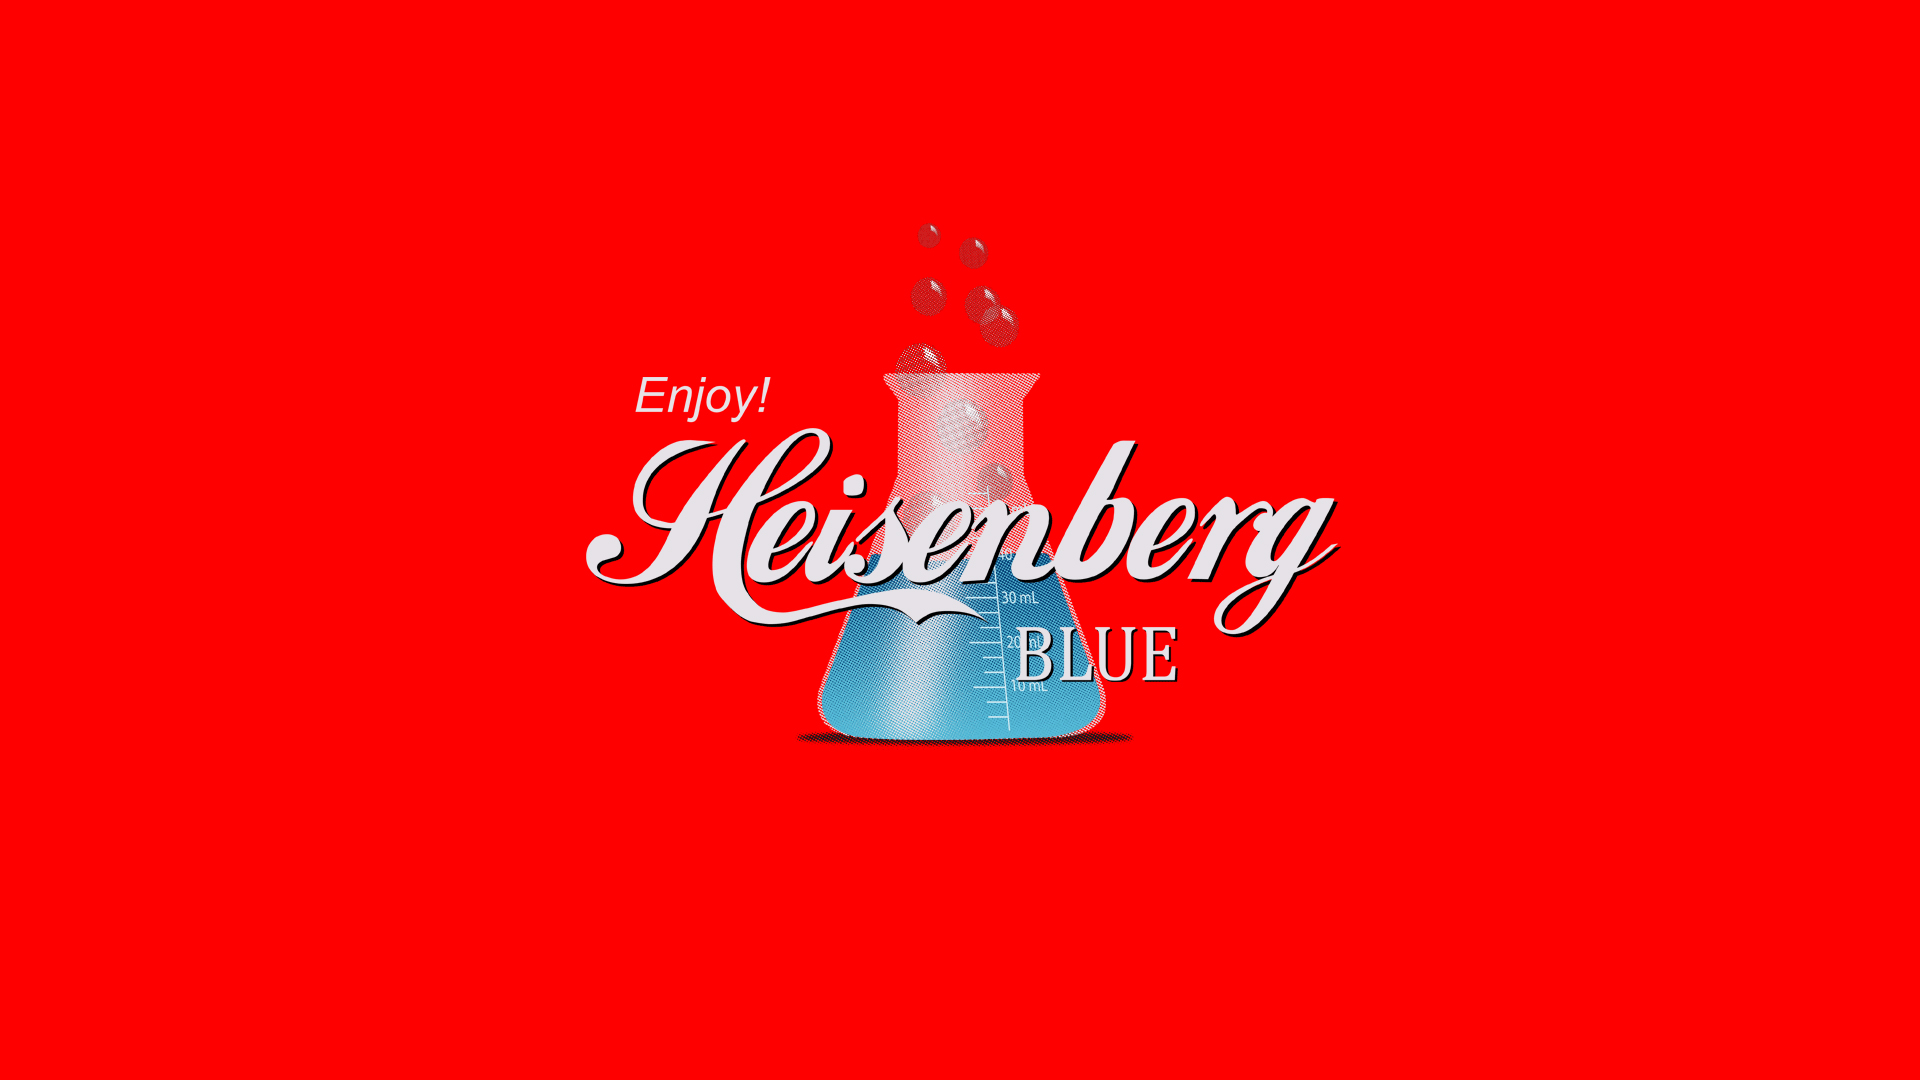 Bad Heisenberg Beer Humor Coca Cola Drinks Wallpaper